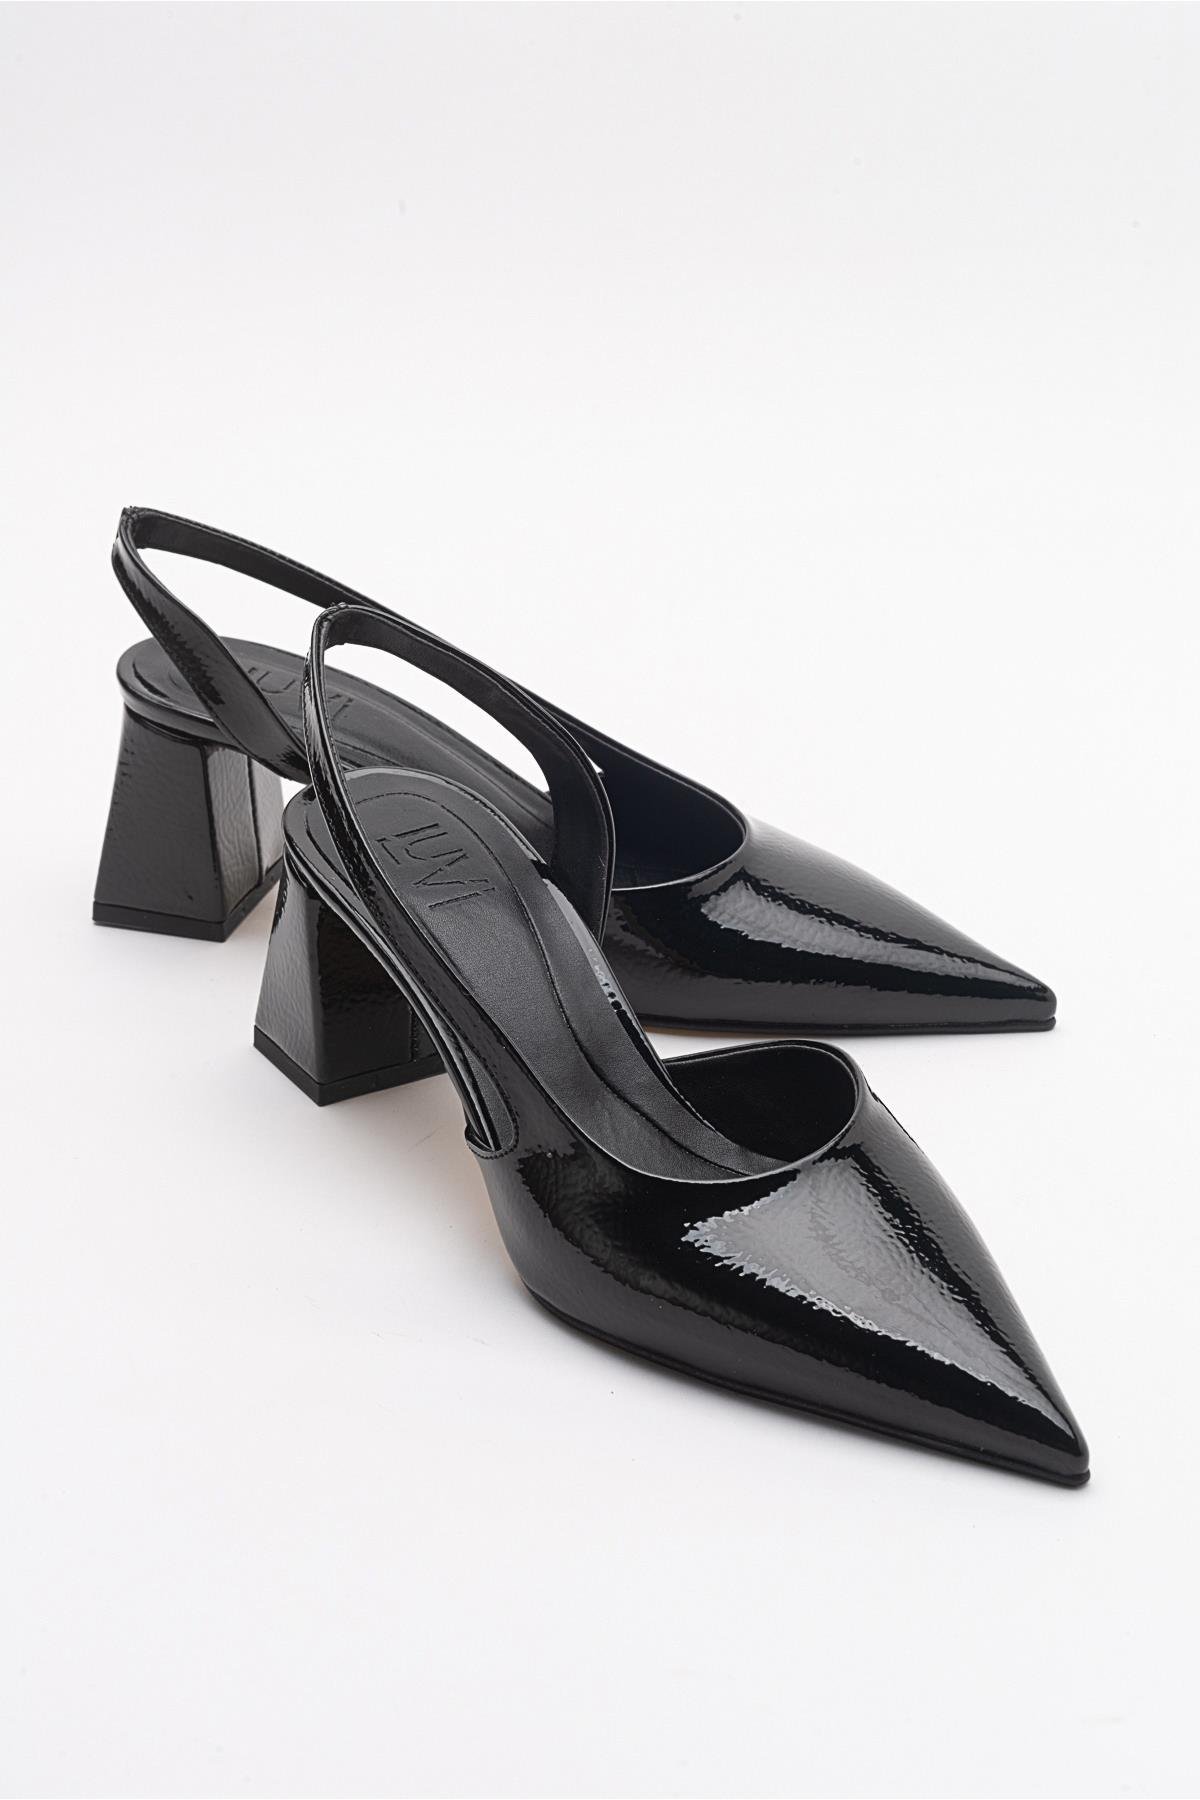 ALSO Siyah Kırışık Rugan Kadın Topuklu Ayakkabı